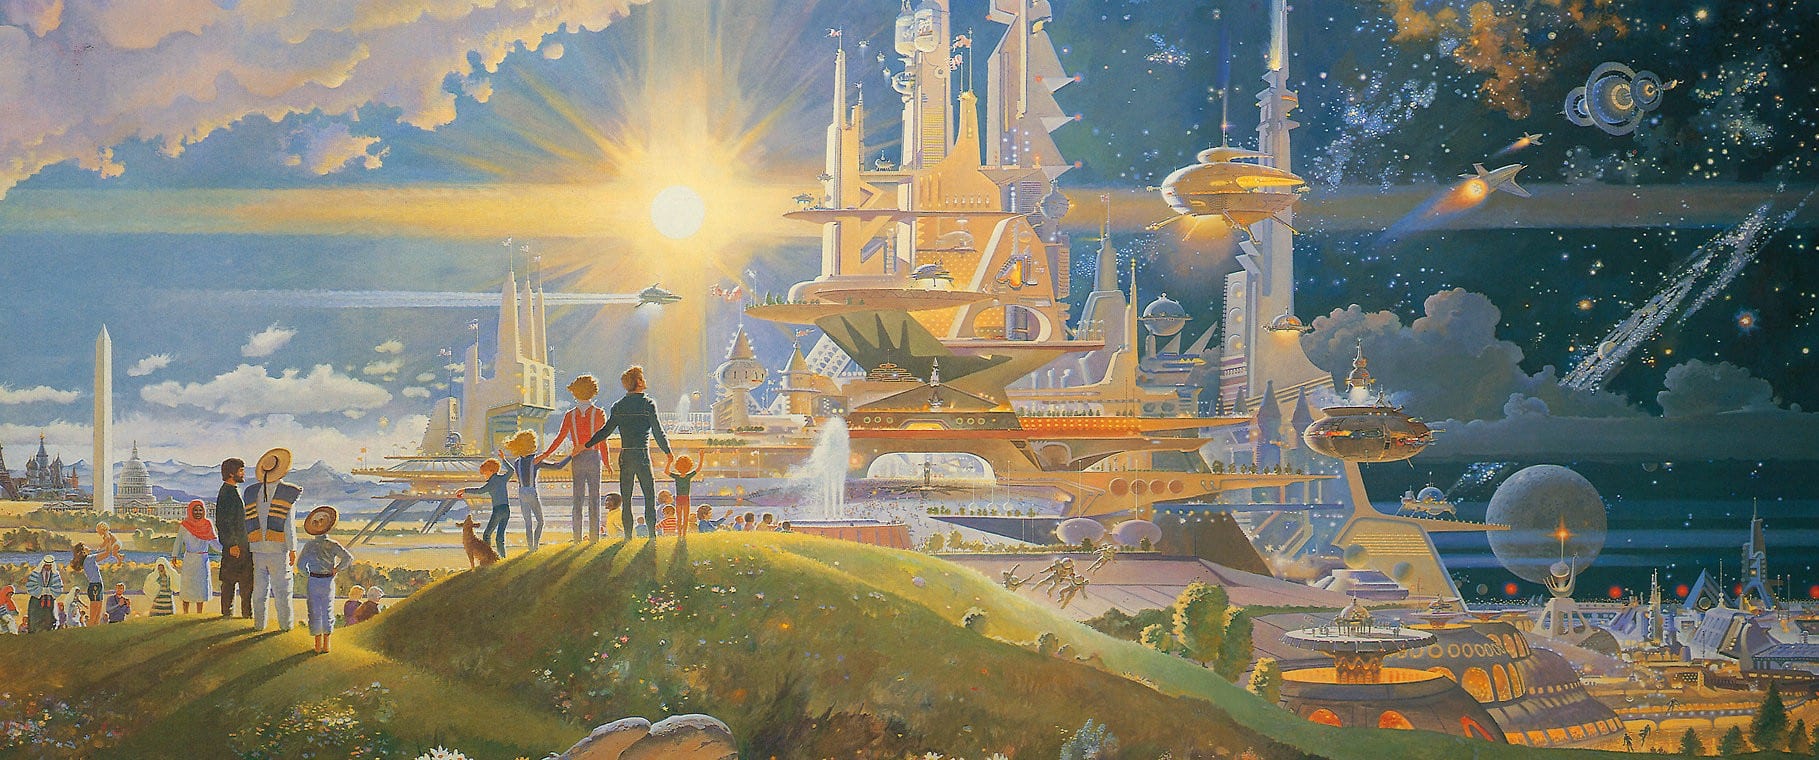 Utopia – O que é? Pode ela vir a ser tornar algo real em nossa civilização?